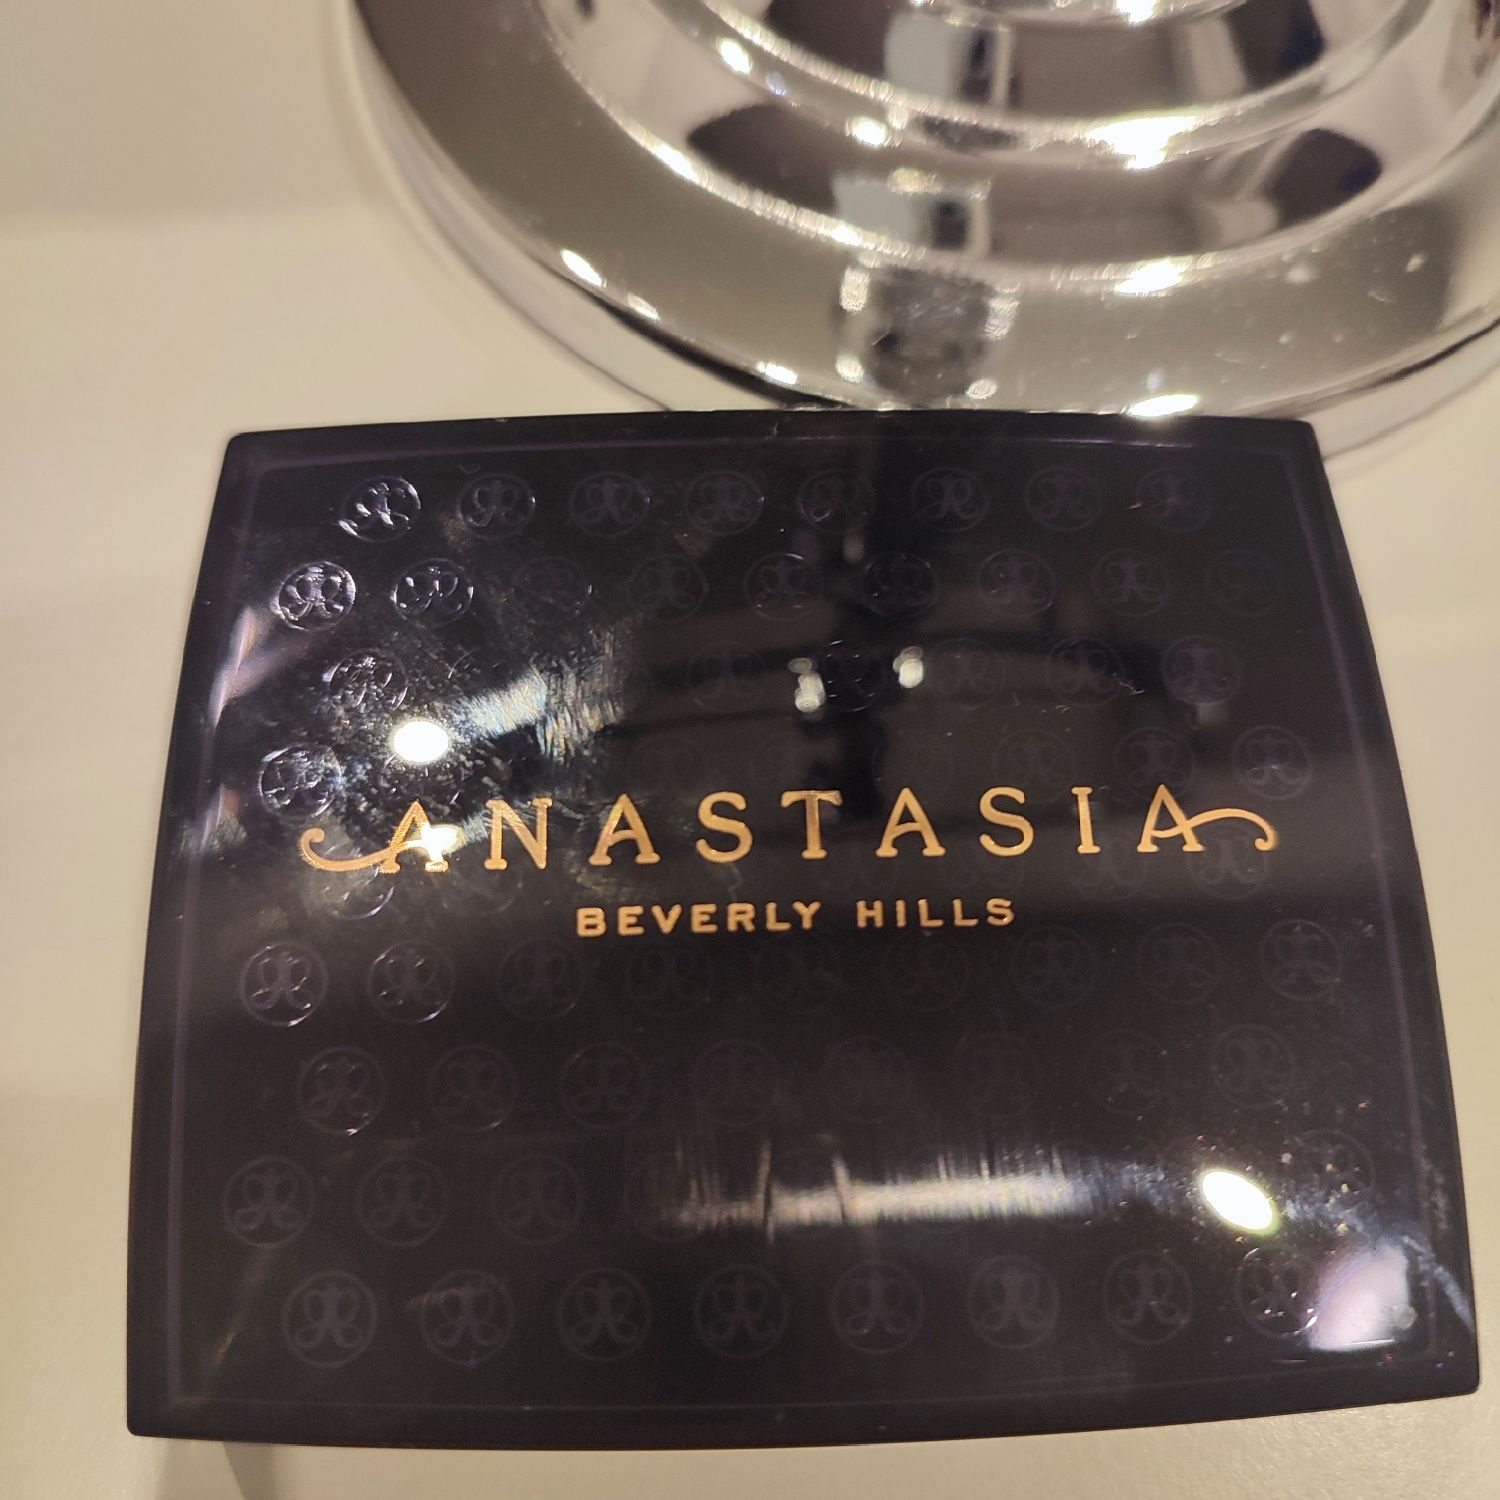 Bronzer Anastasia Beverly Hills!
Bronzer Anasta
Bronzer Anasta